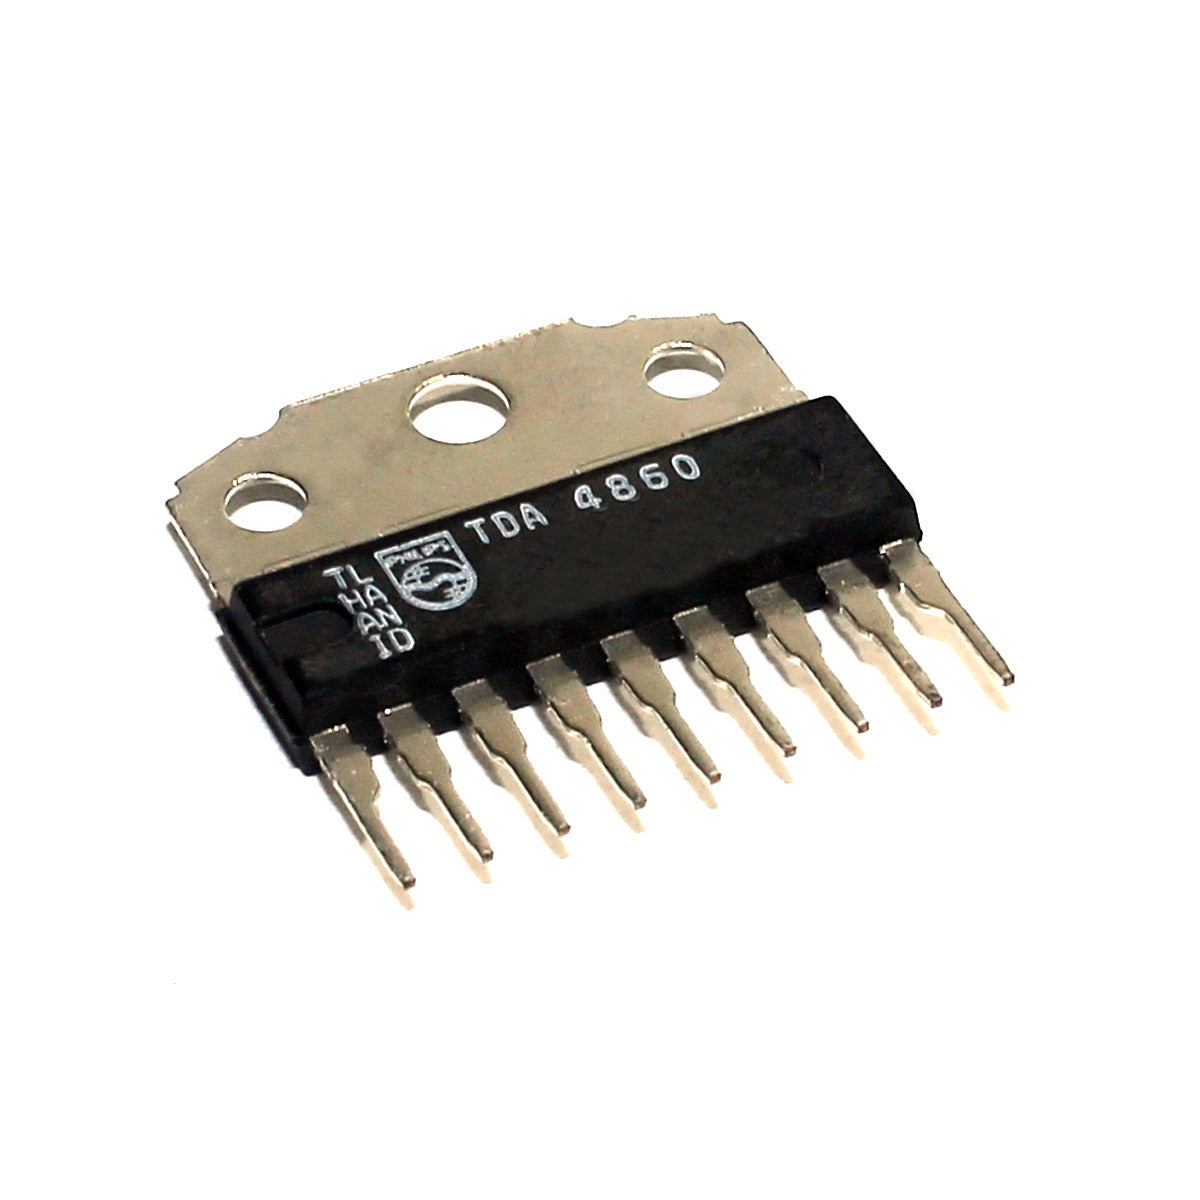 PHILIPS TDA4860 componente elettronico, circuito integrato, 9 contatti